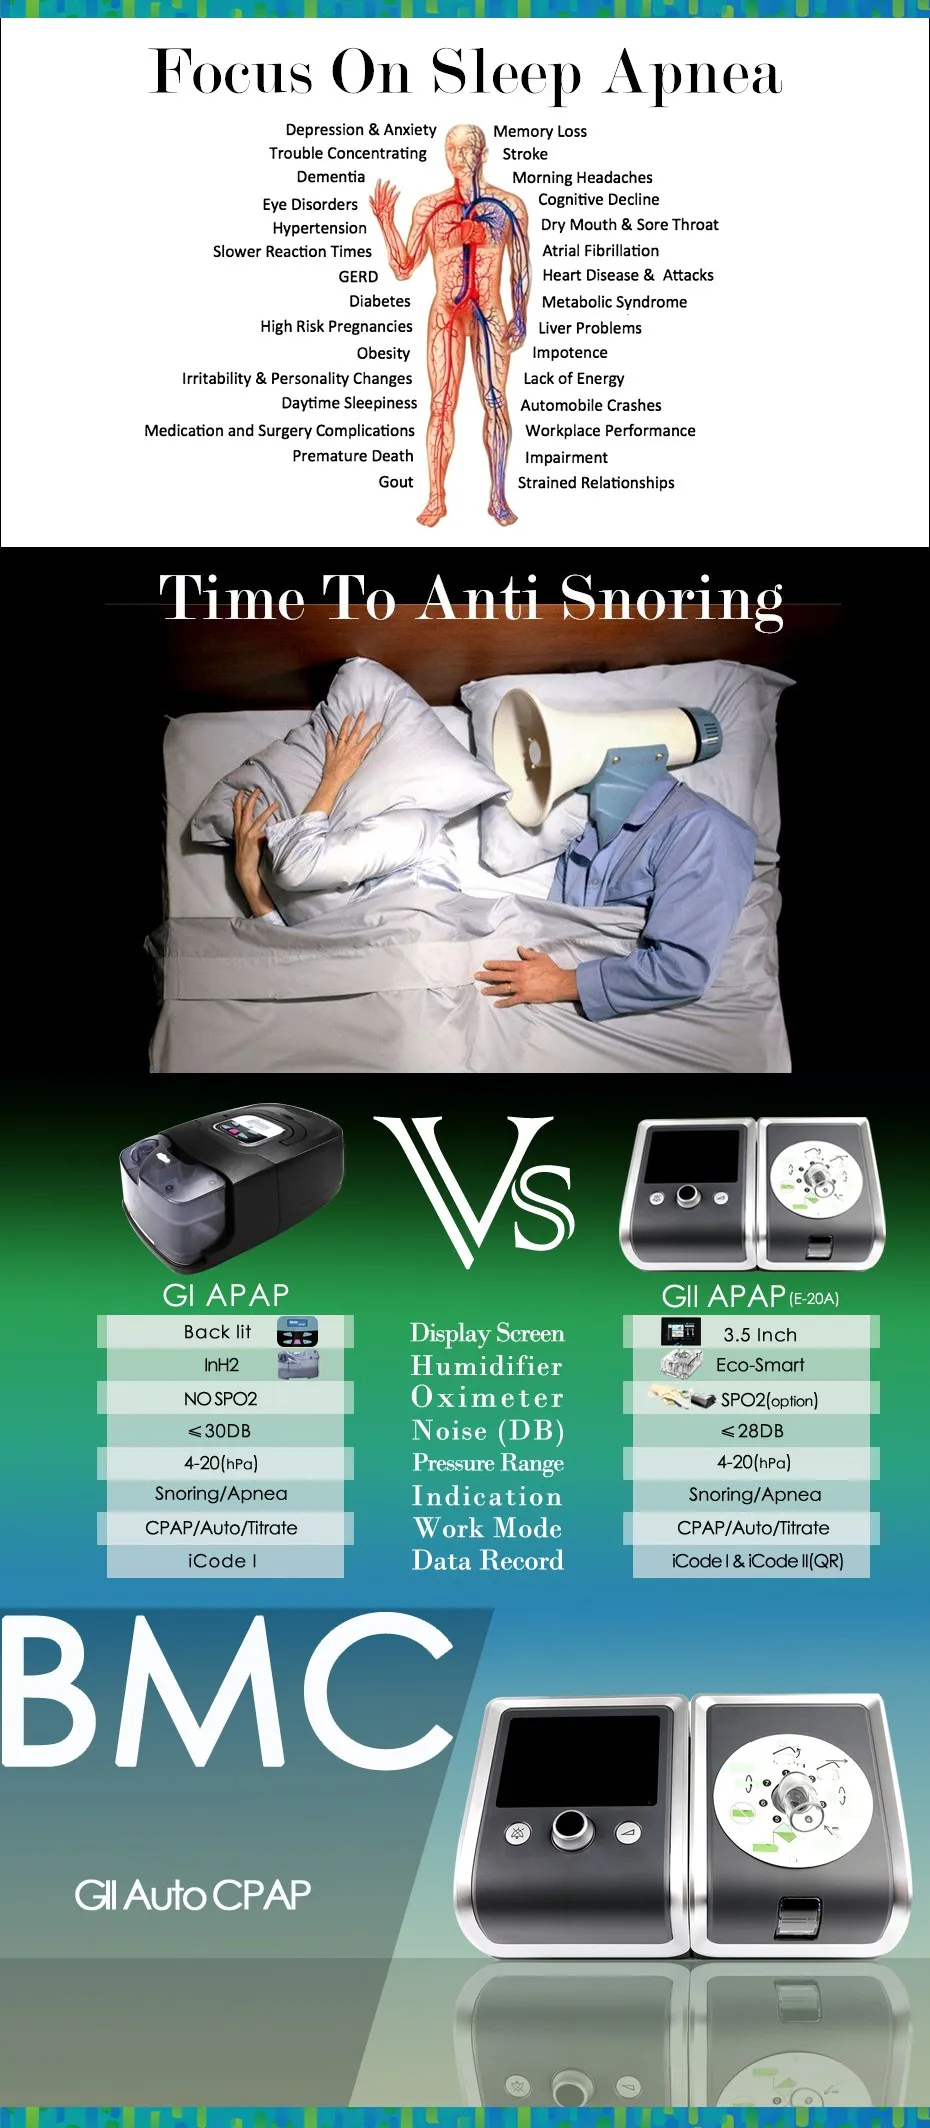 DOCTODD GII Авто CPAP респиратор E-20AH-O портативный вентилятор для сна Храп апноэ W/увлажнитель маска шланг SD карты